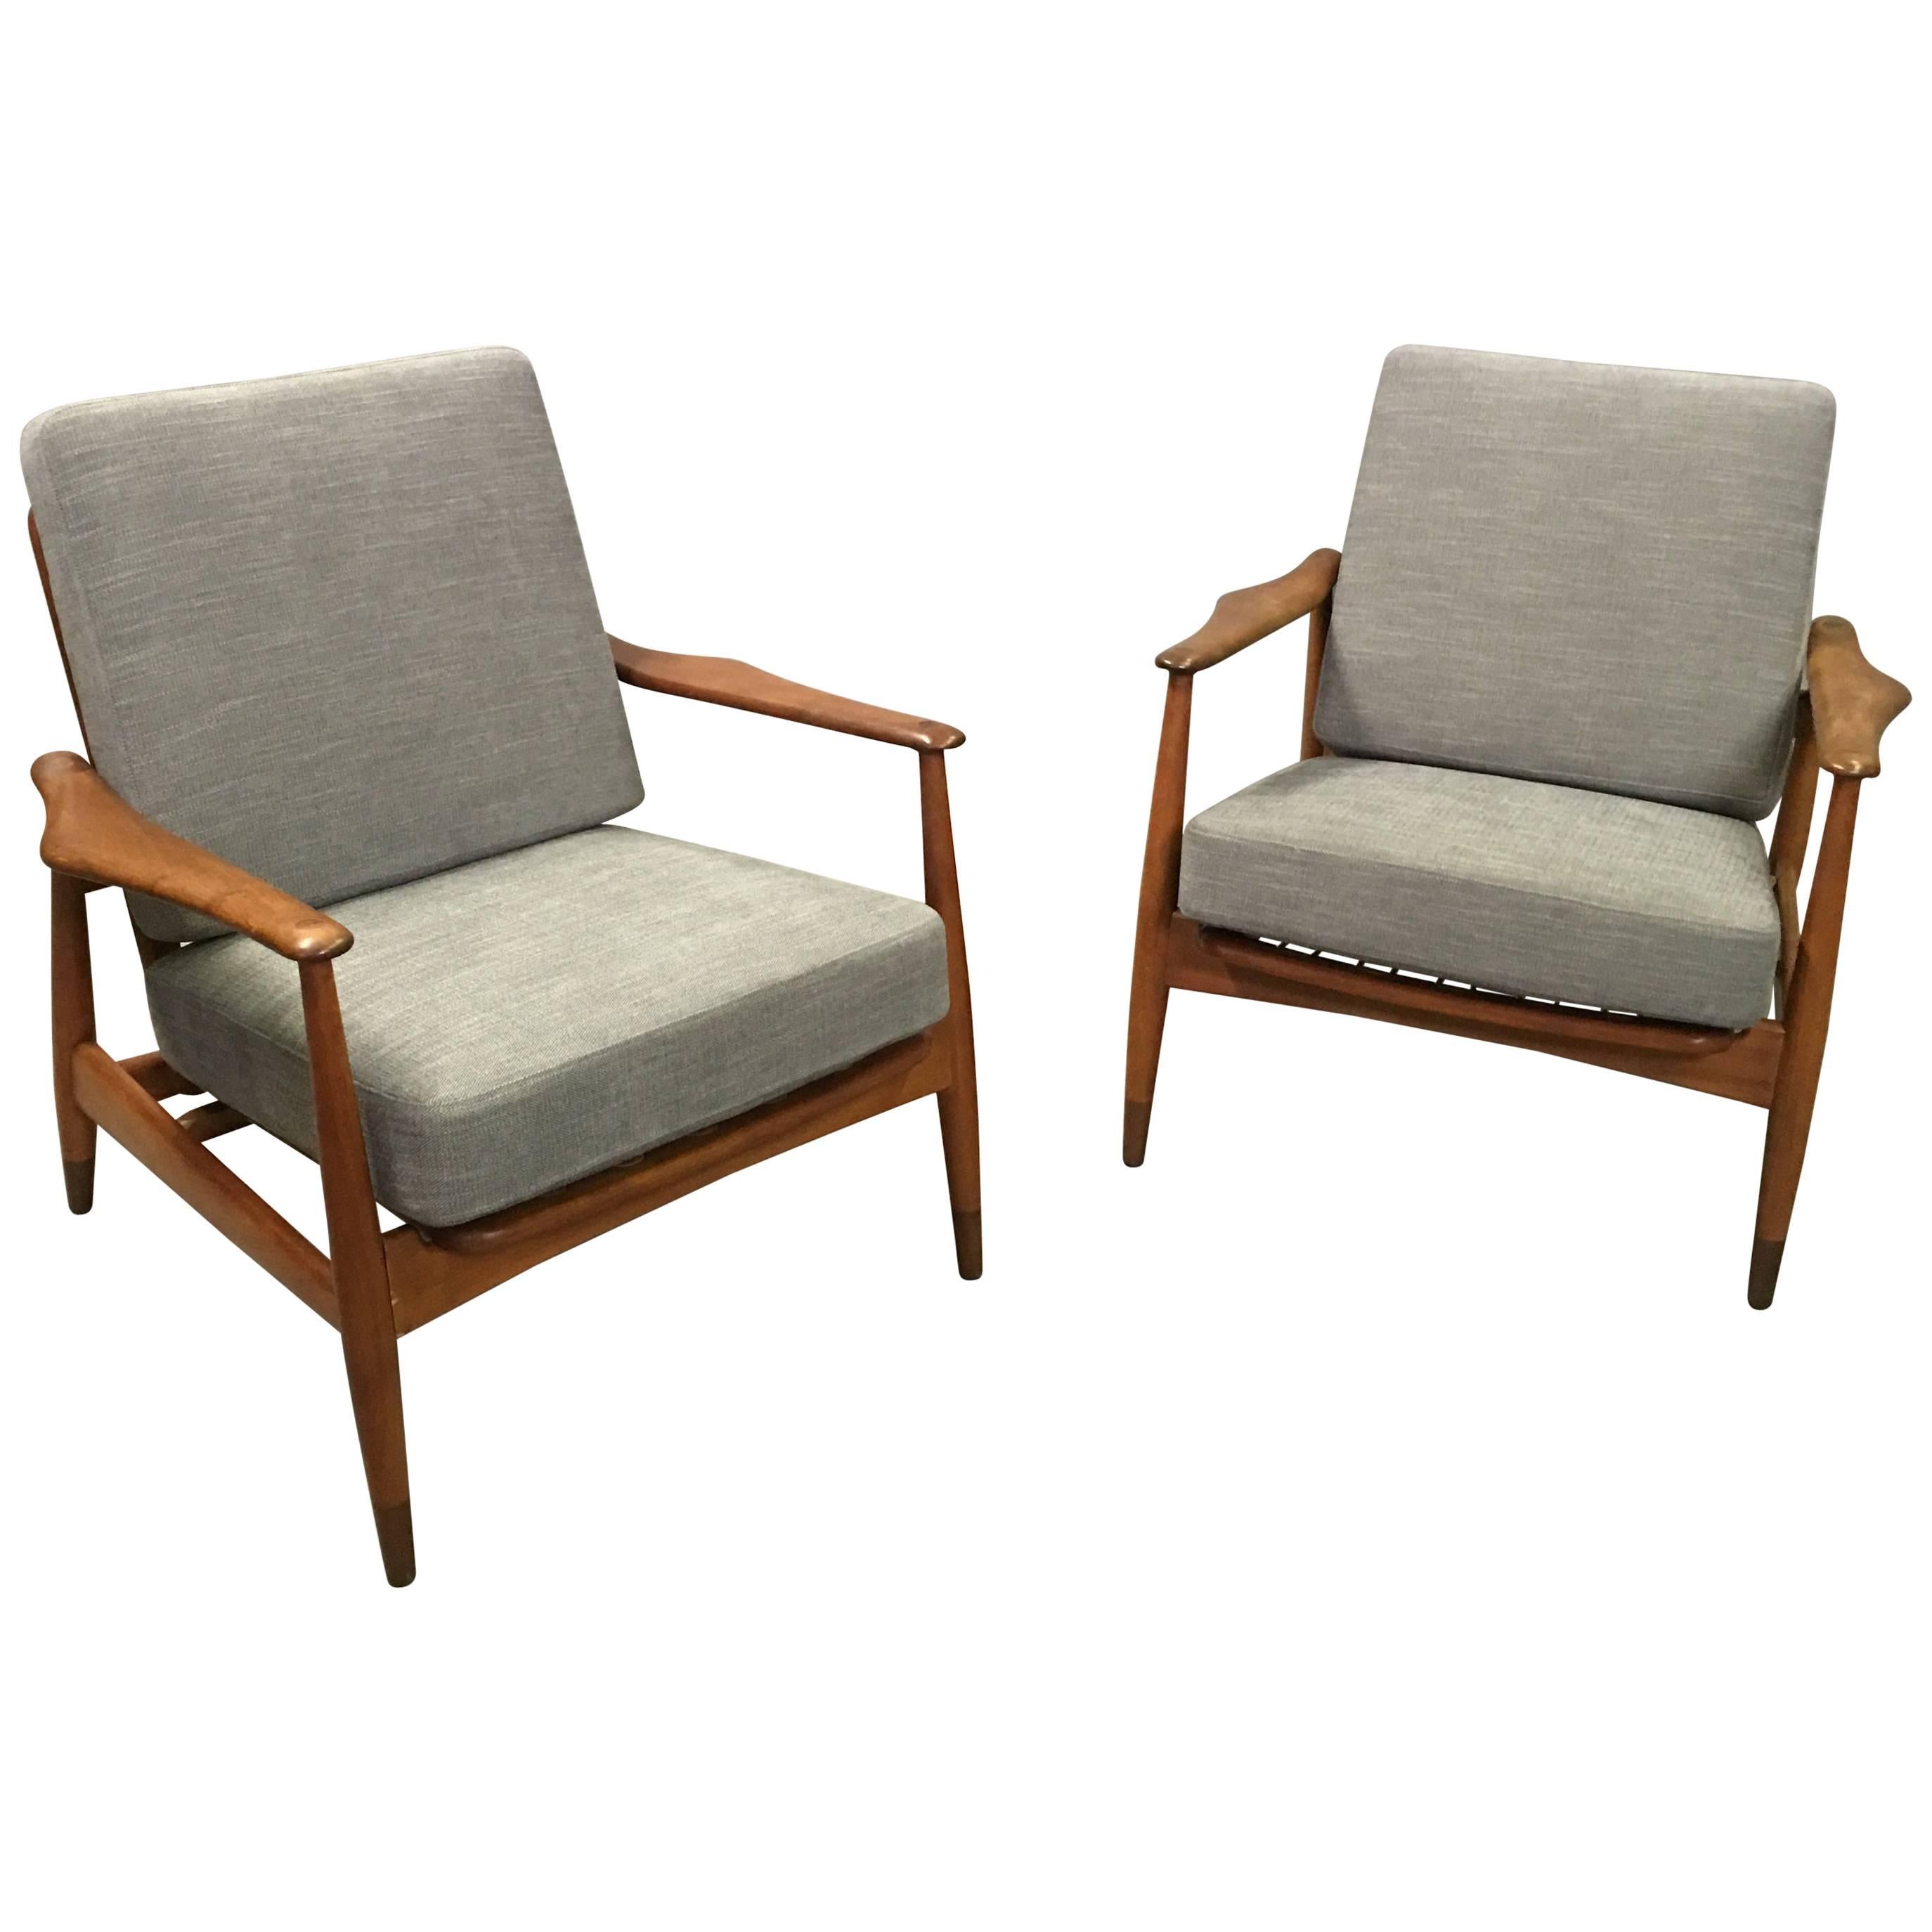 Pair of Danish Modern Lounge Chairs by Finn Juhl for John Stuart